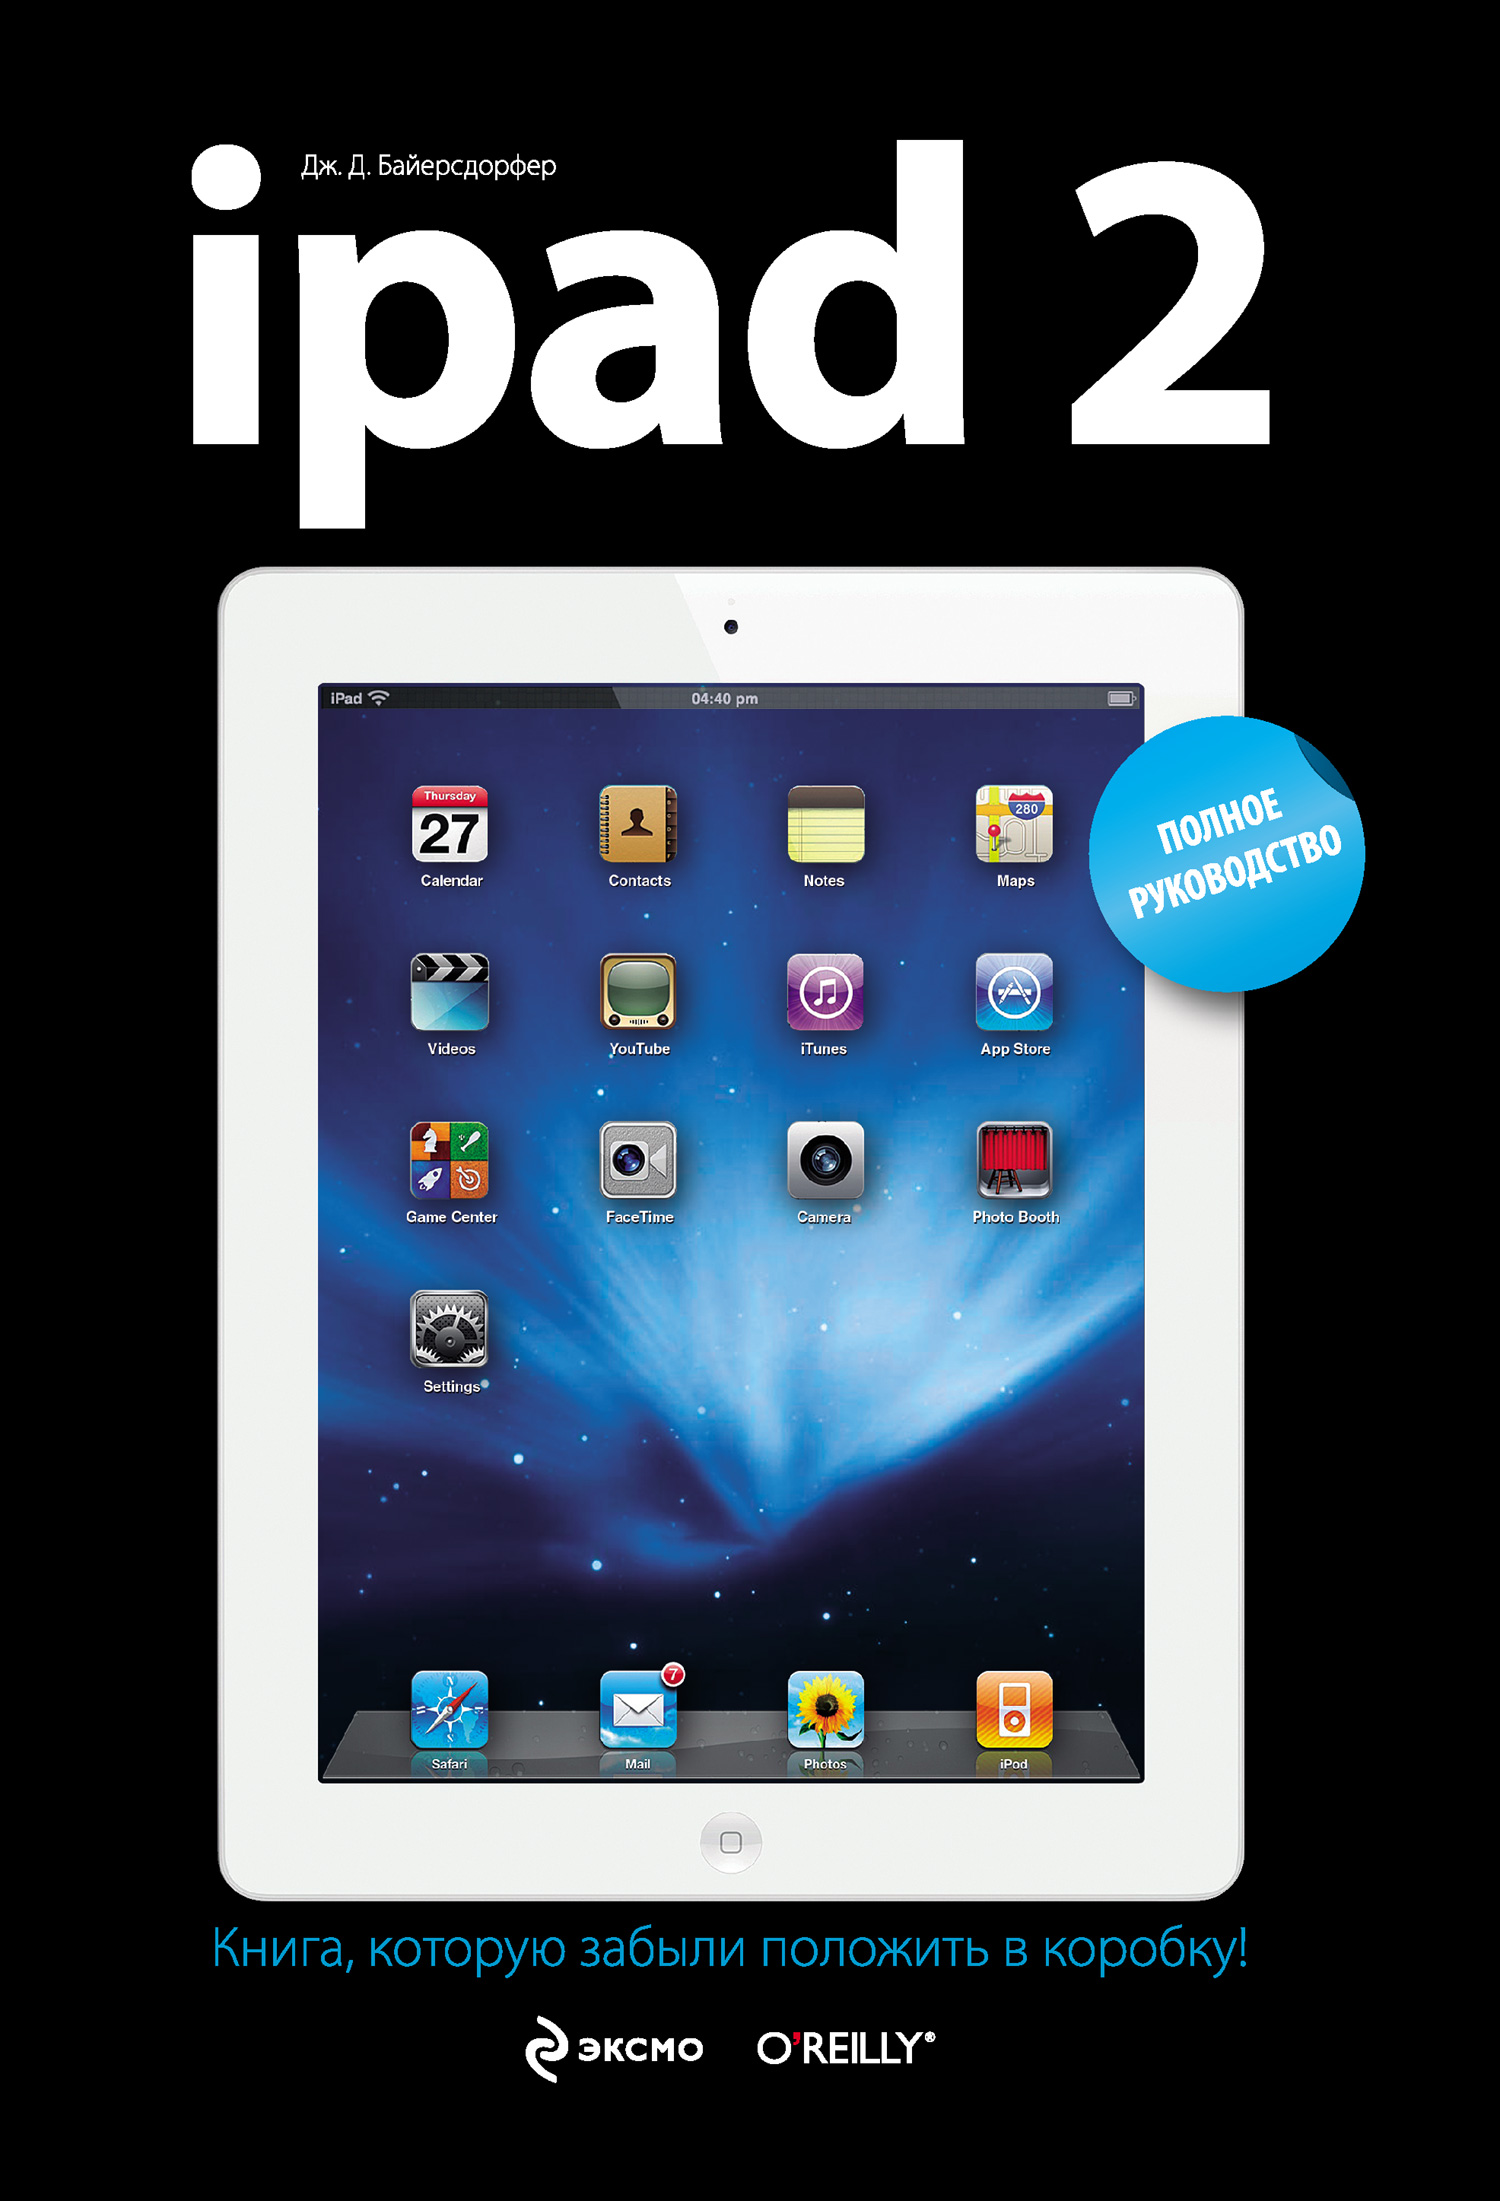 Книга  iPad 2. Полное руководство созданная Дж. Д. Байерсдорфер может относится к жанру компьютерное железо, ОС и сети, программы. Стоимость электронной книги iPad 2. Полное руководство с идентификатором 2553685 составляет 249.00 руб.